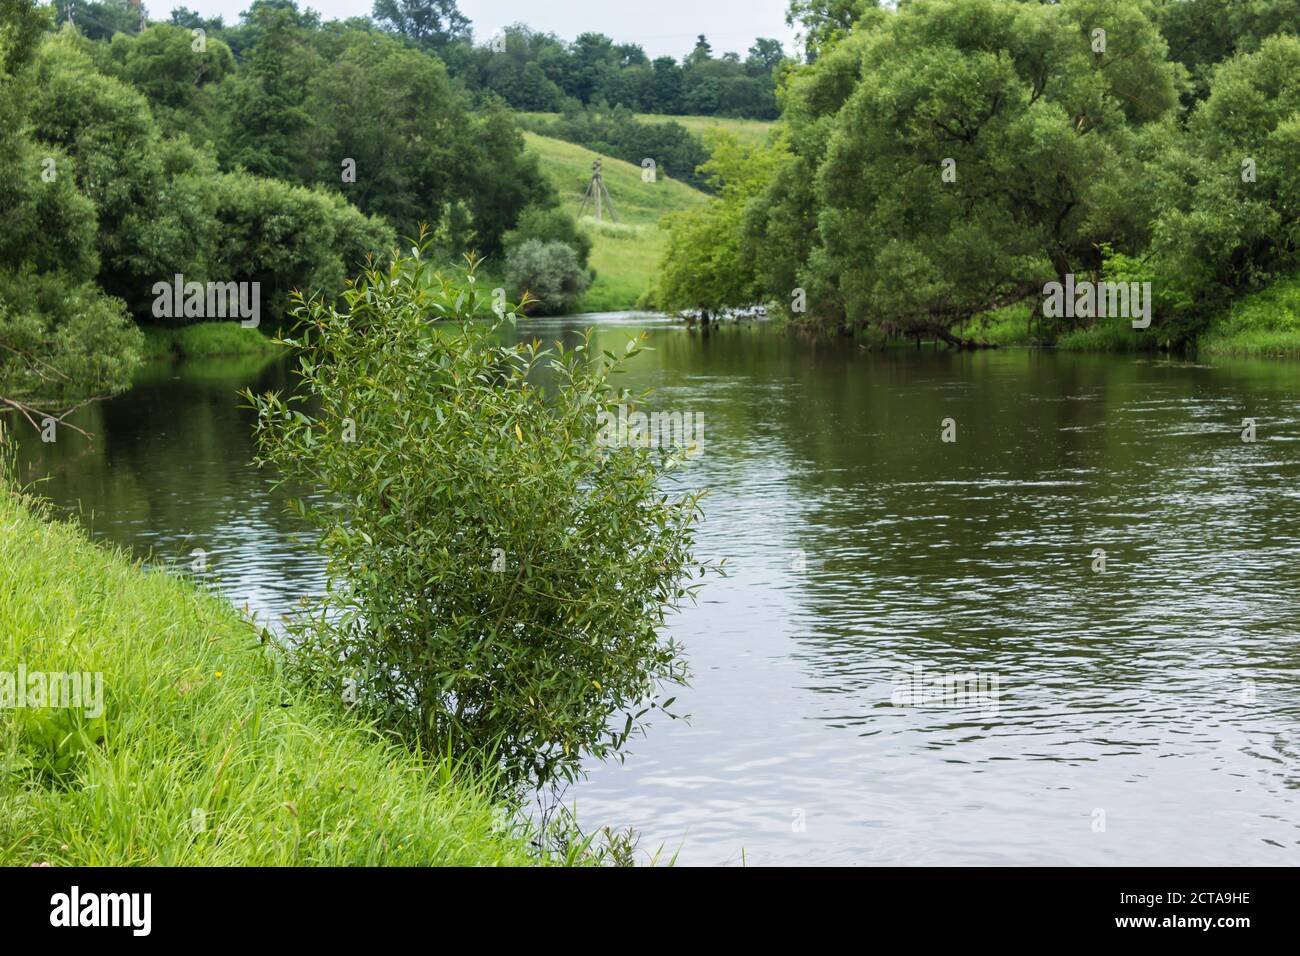 Una riva ripida, alberi lungo le rive, un cespuglio salice in primo piano. Il fiume Protva in Russia in piena estate, un luogo ideale per il turismo. Foto Stock